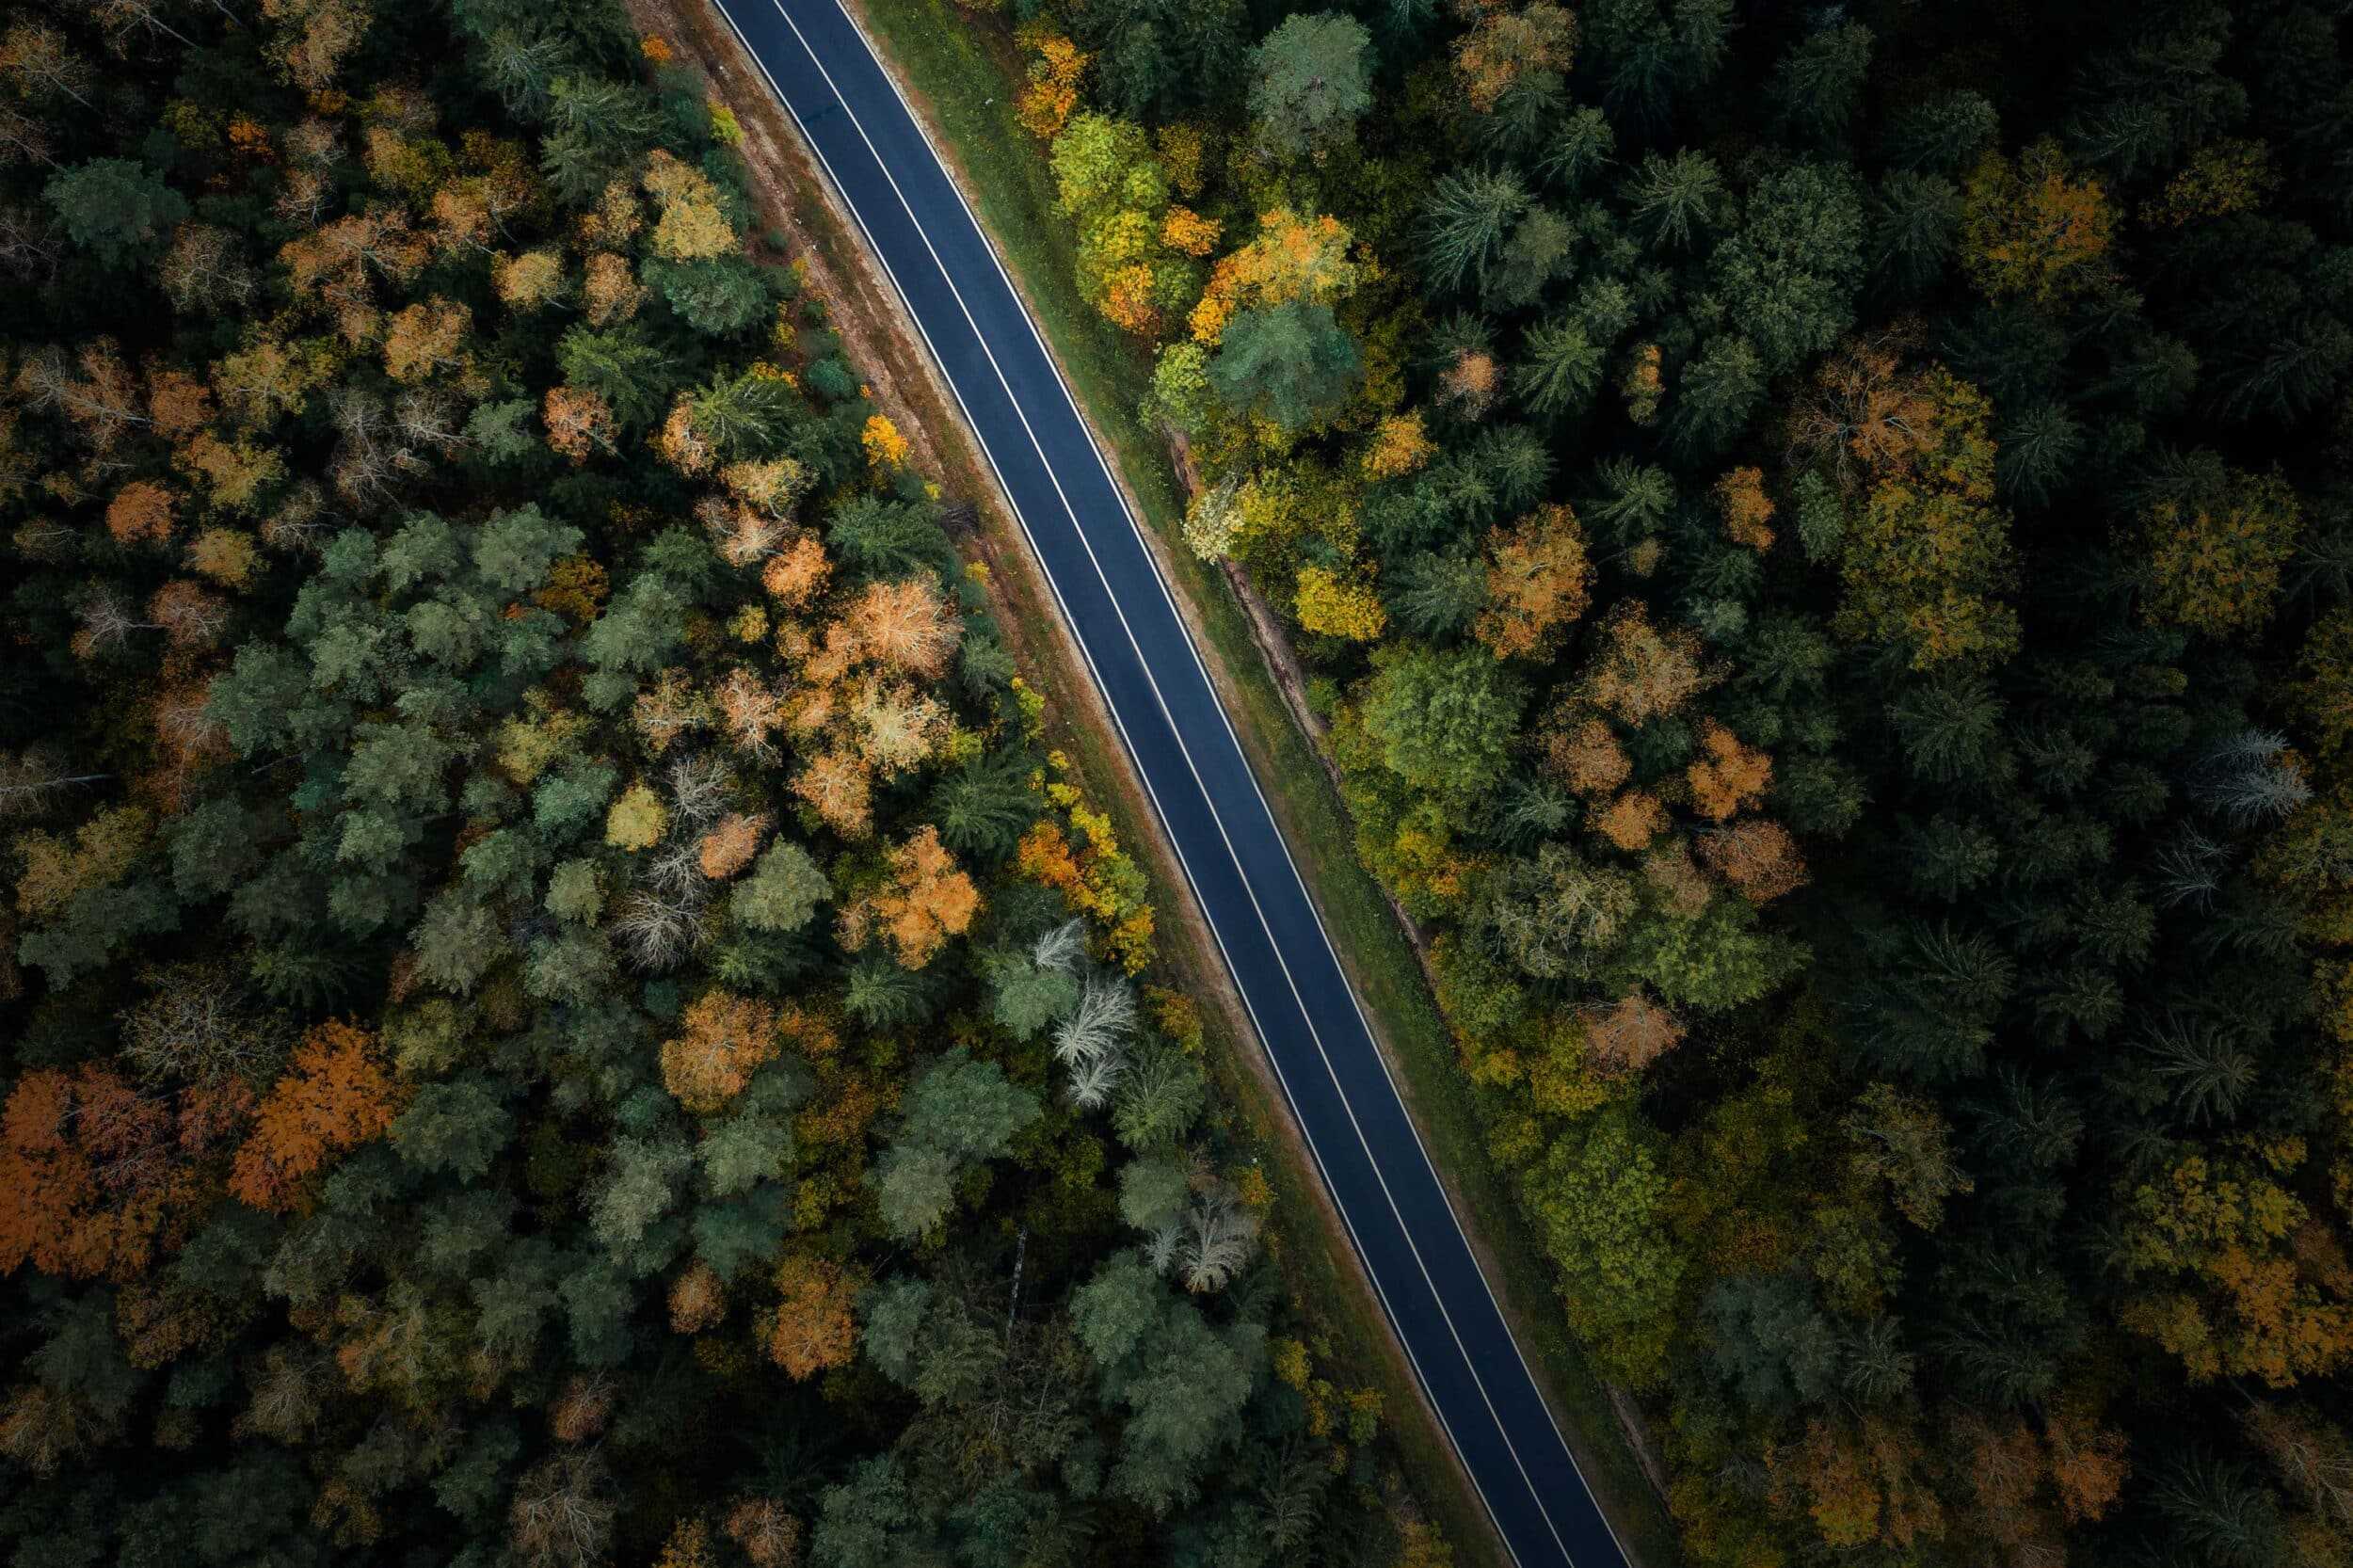 An aerial view of a road through dense trees